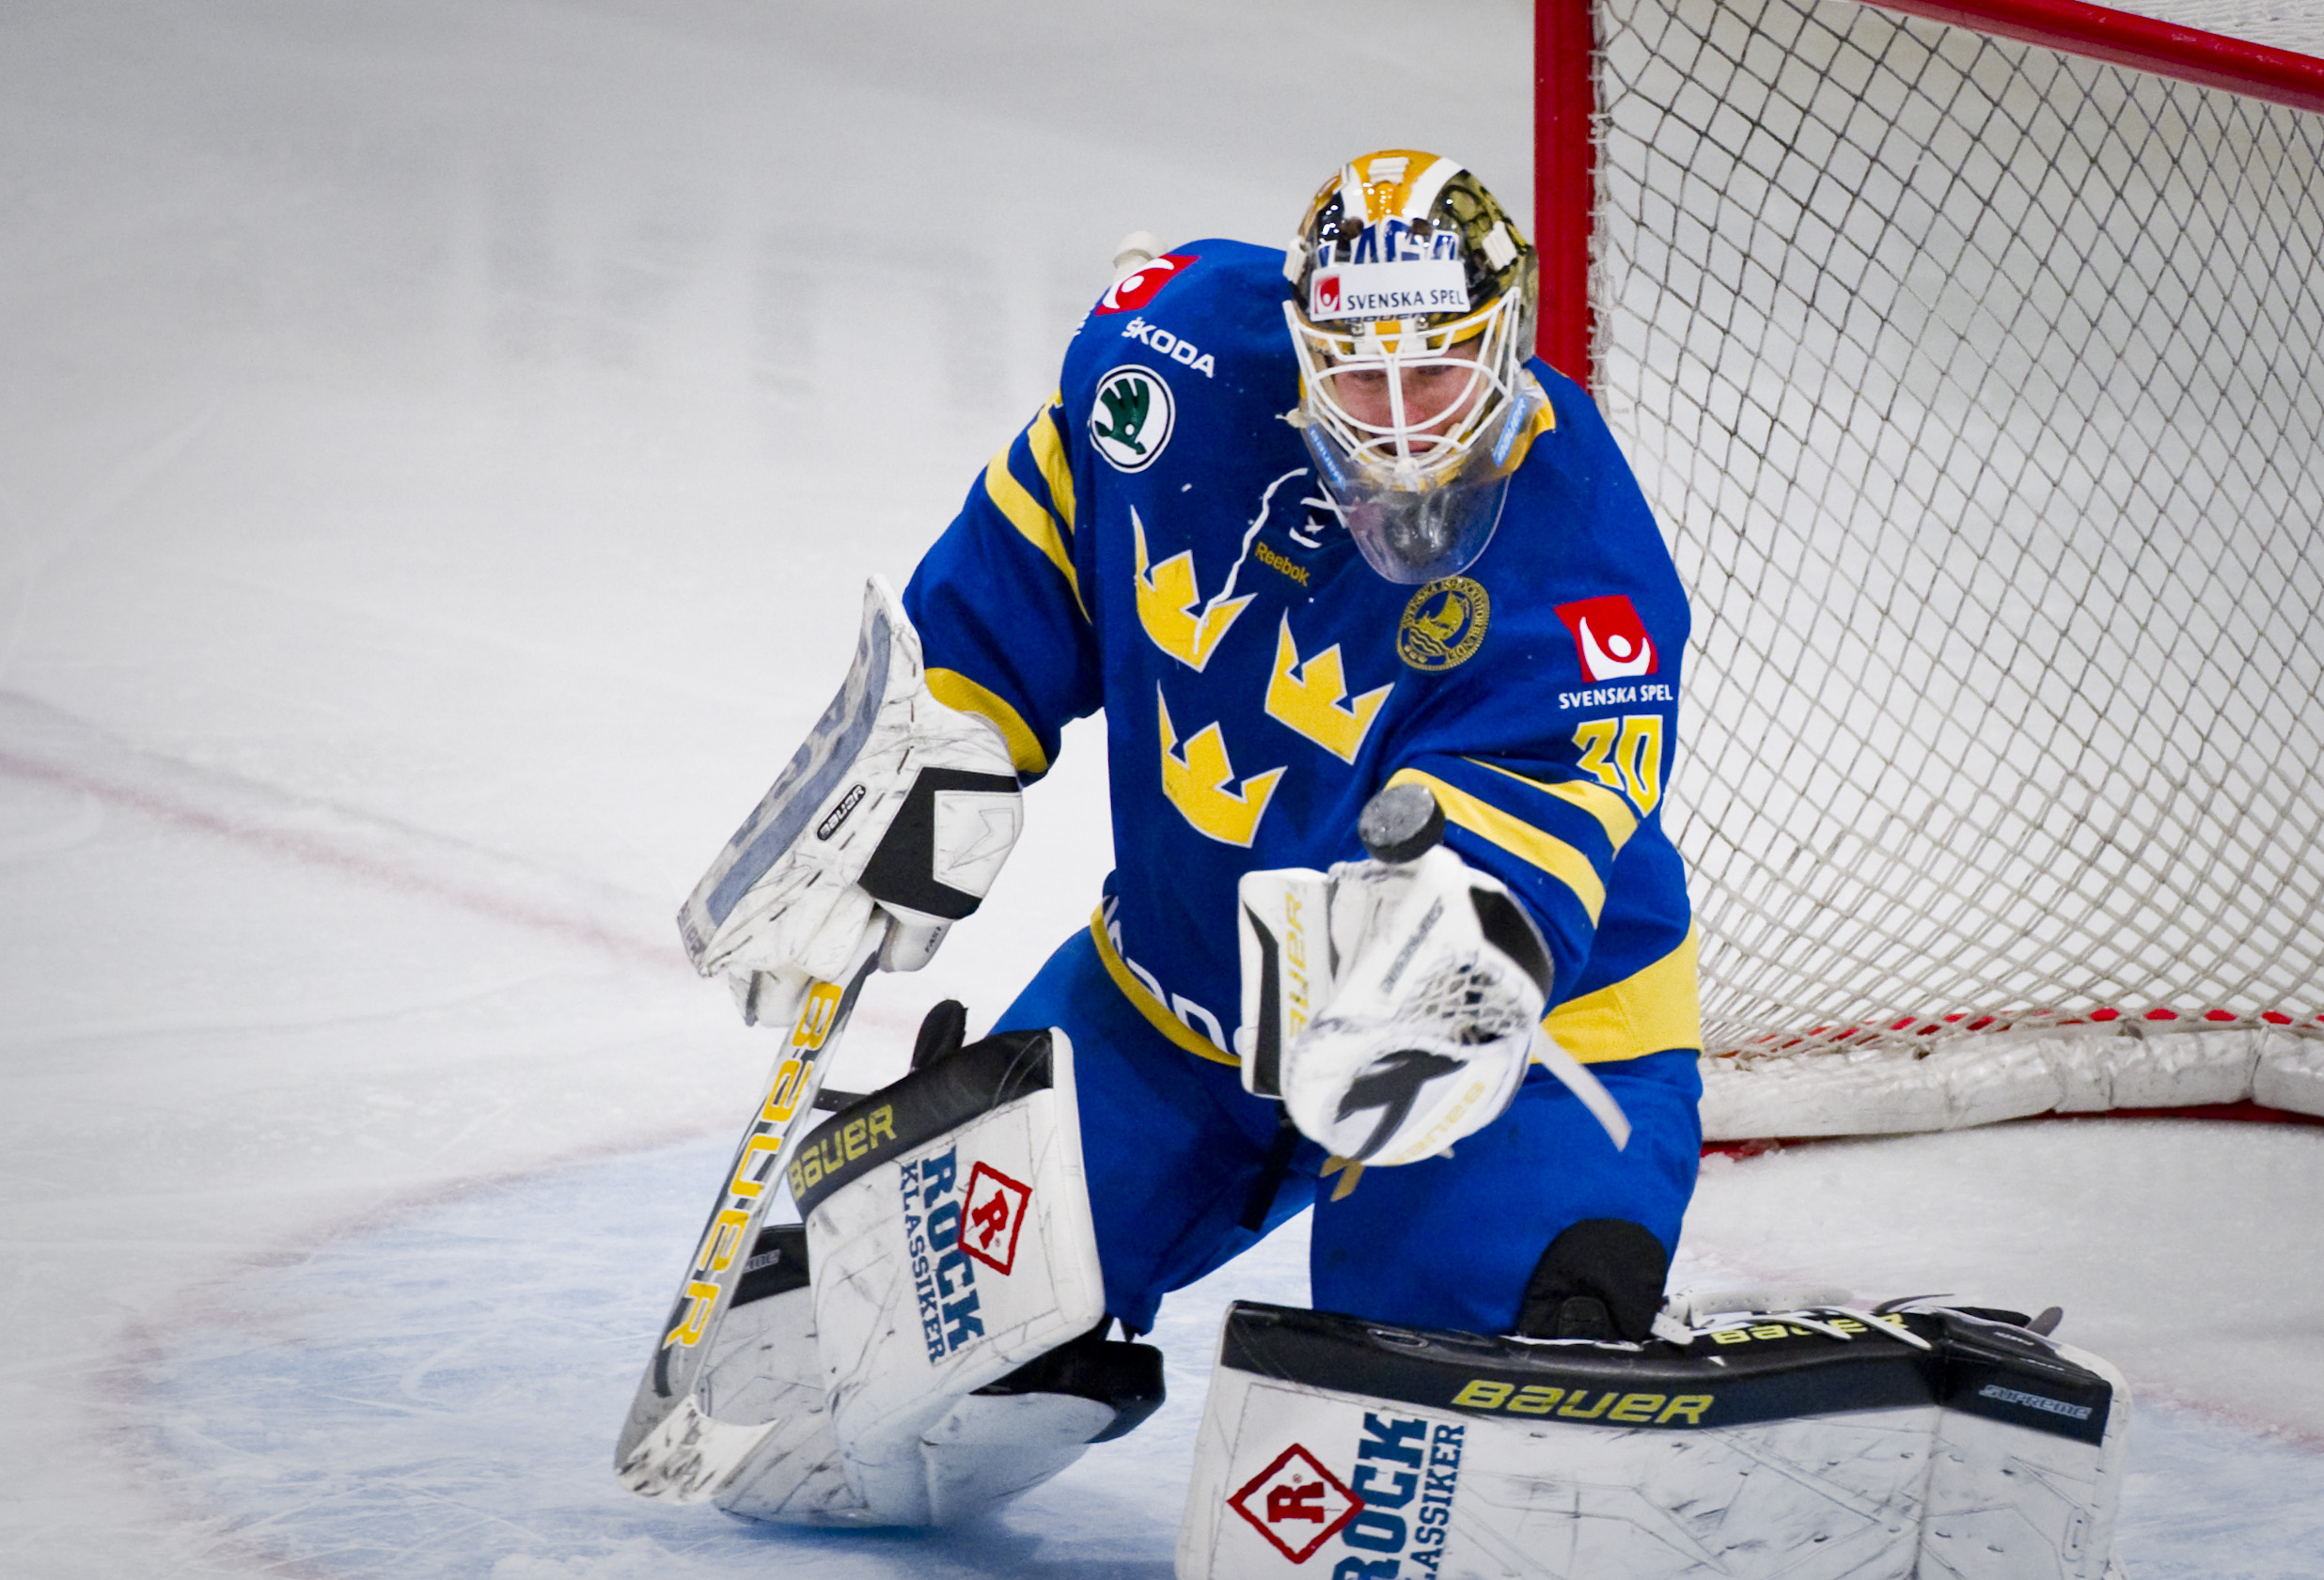 Tre Kronor, ishockey, Par Marts, Niklas Wikegard